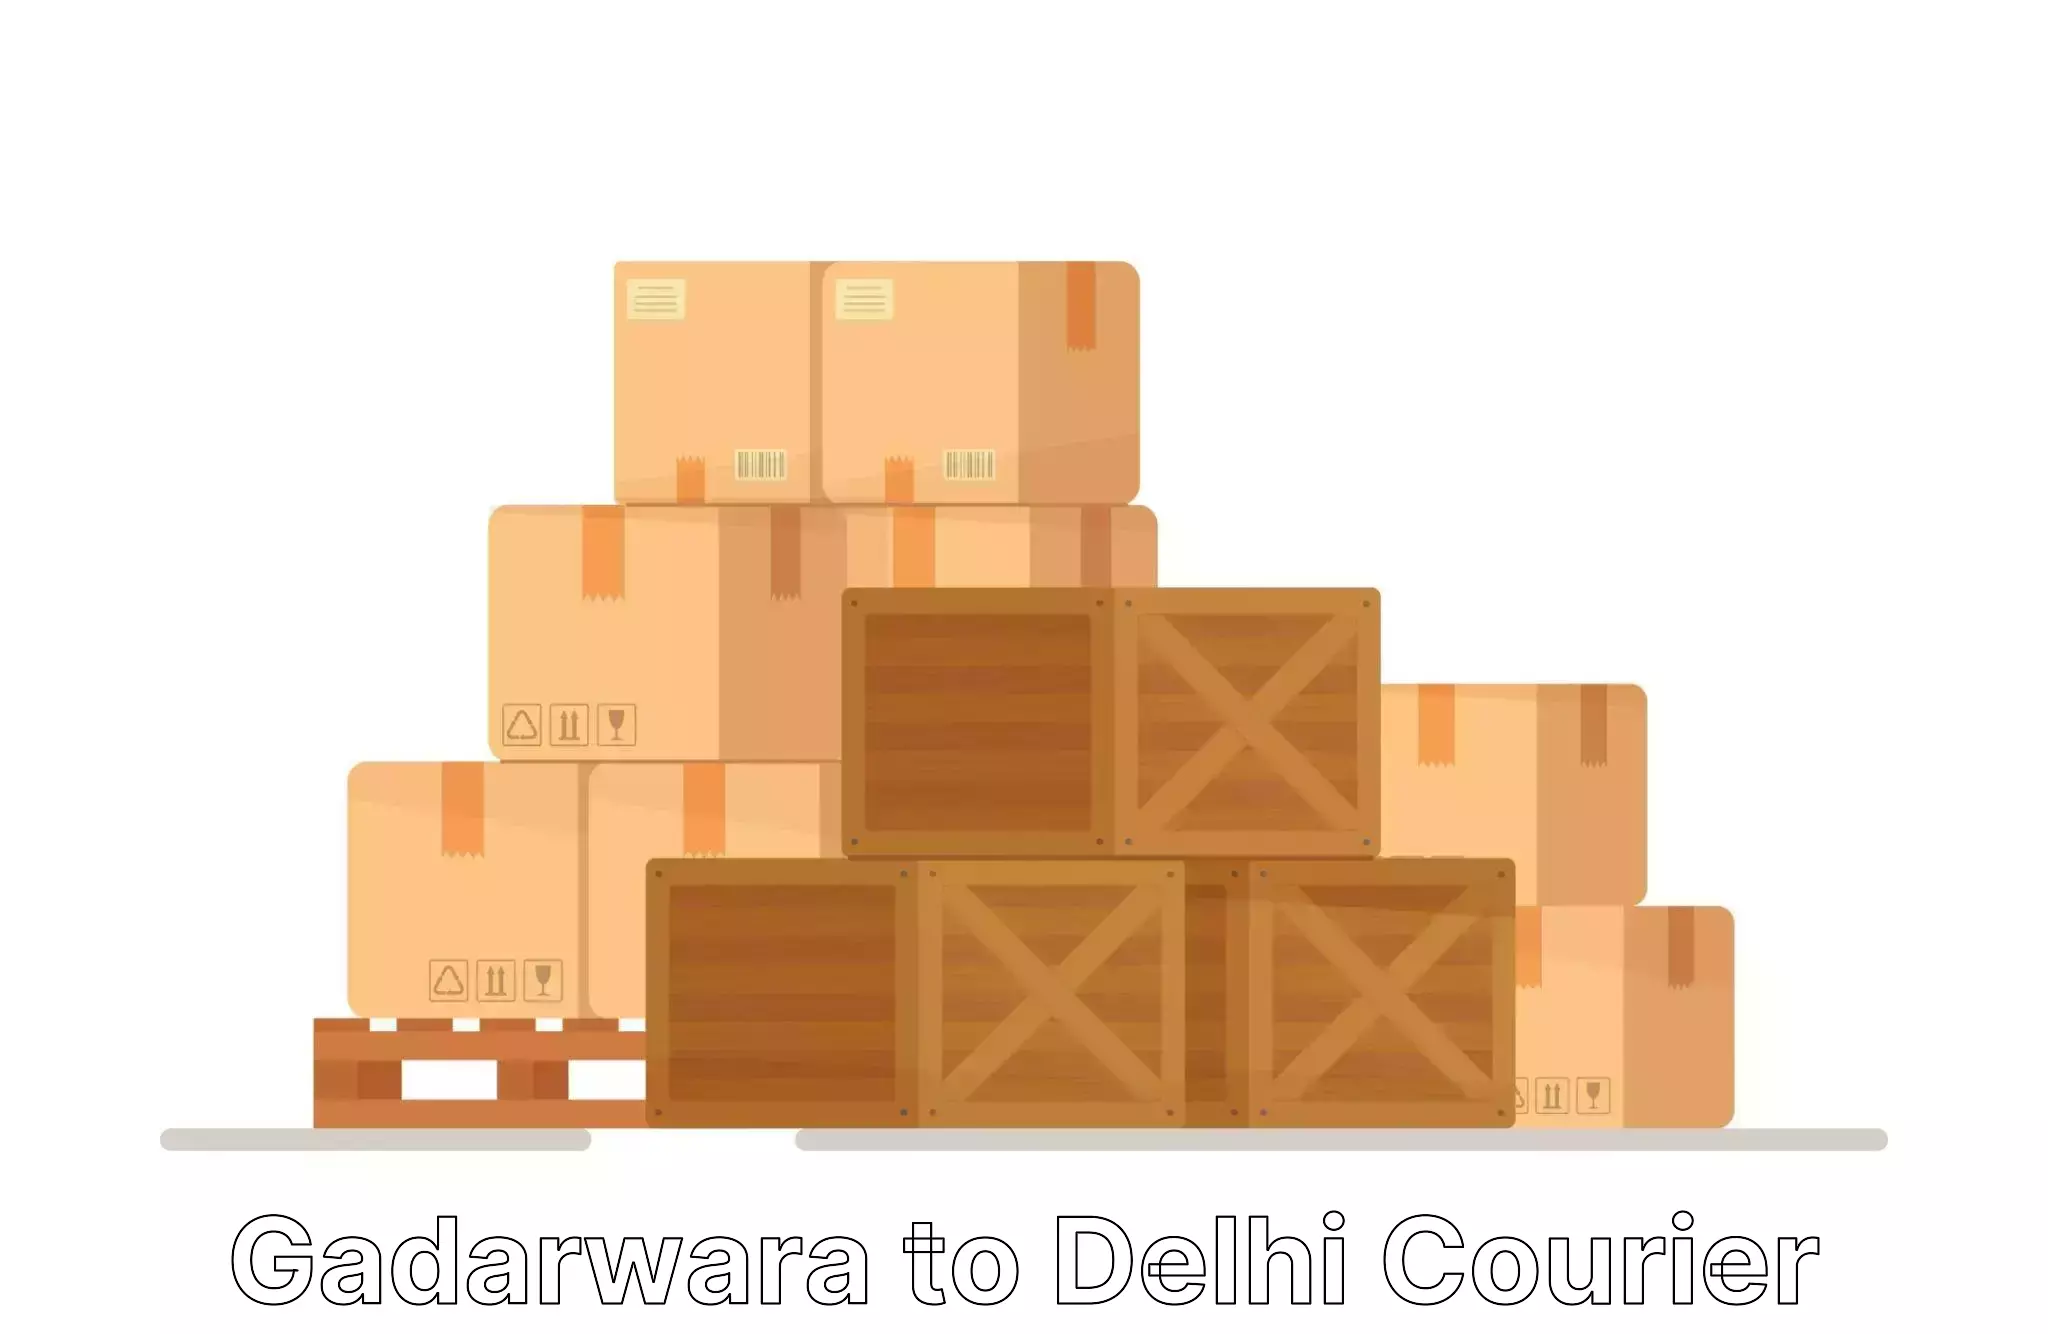 Furniture transport experts Gadarwara to Lodhi Road